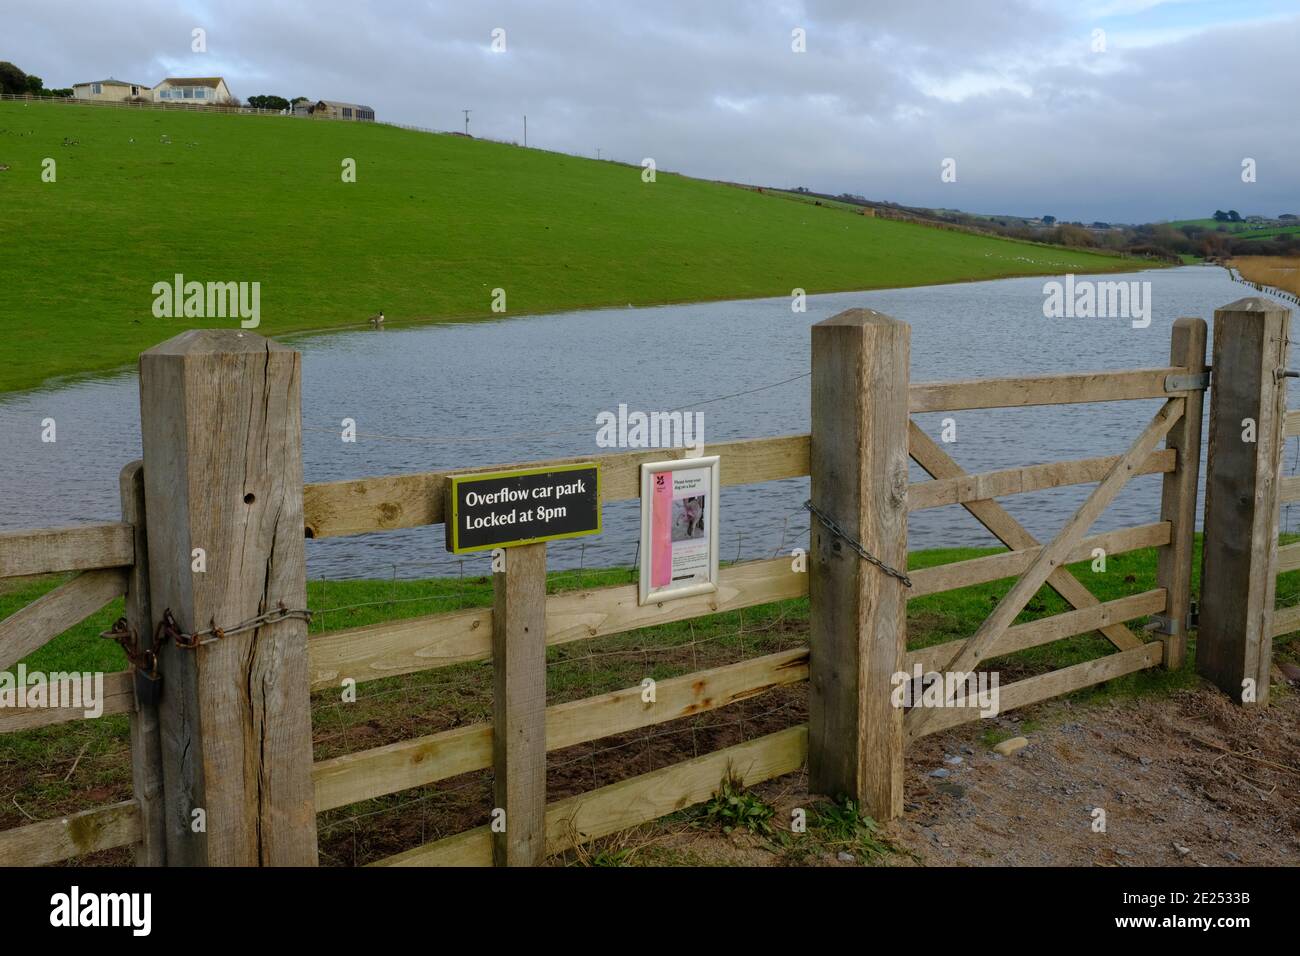 Blick auf überfluteten Überlauf Parkplatz mit treffend beschreibenden Zeichen auf dem Zaun. South Milton Ley Reserve, Thurlestone, South Devon, Großbritannien Stockfoto